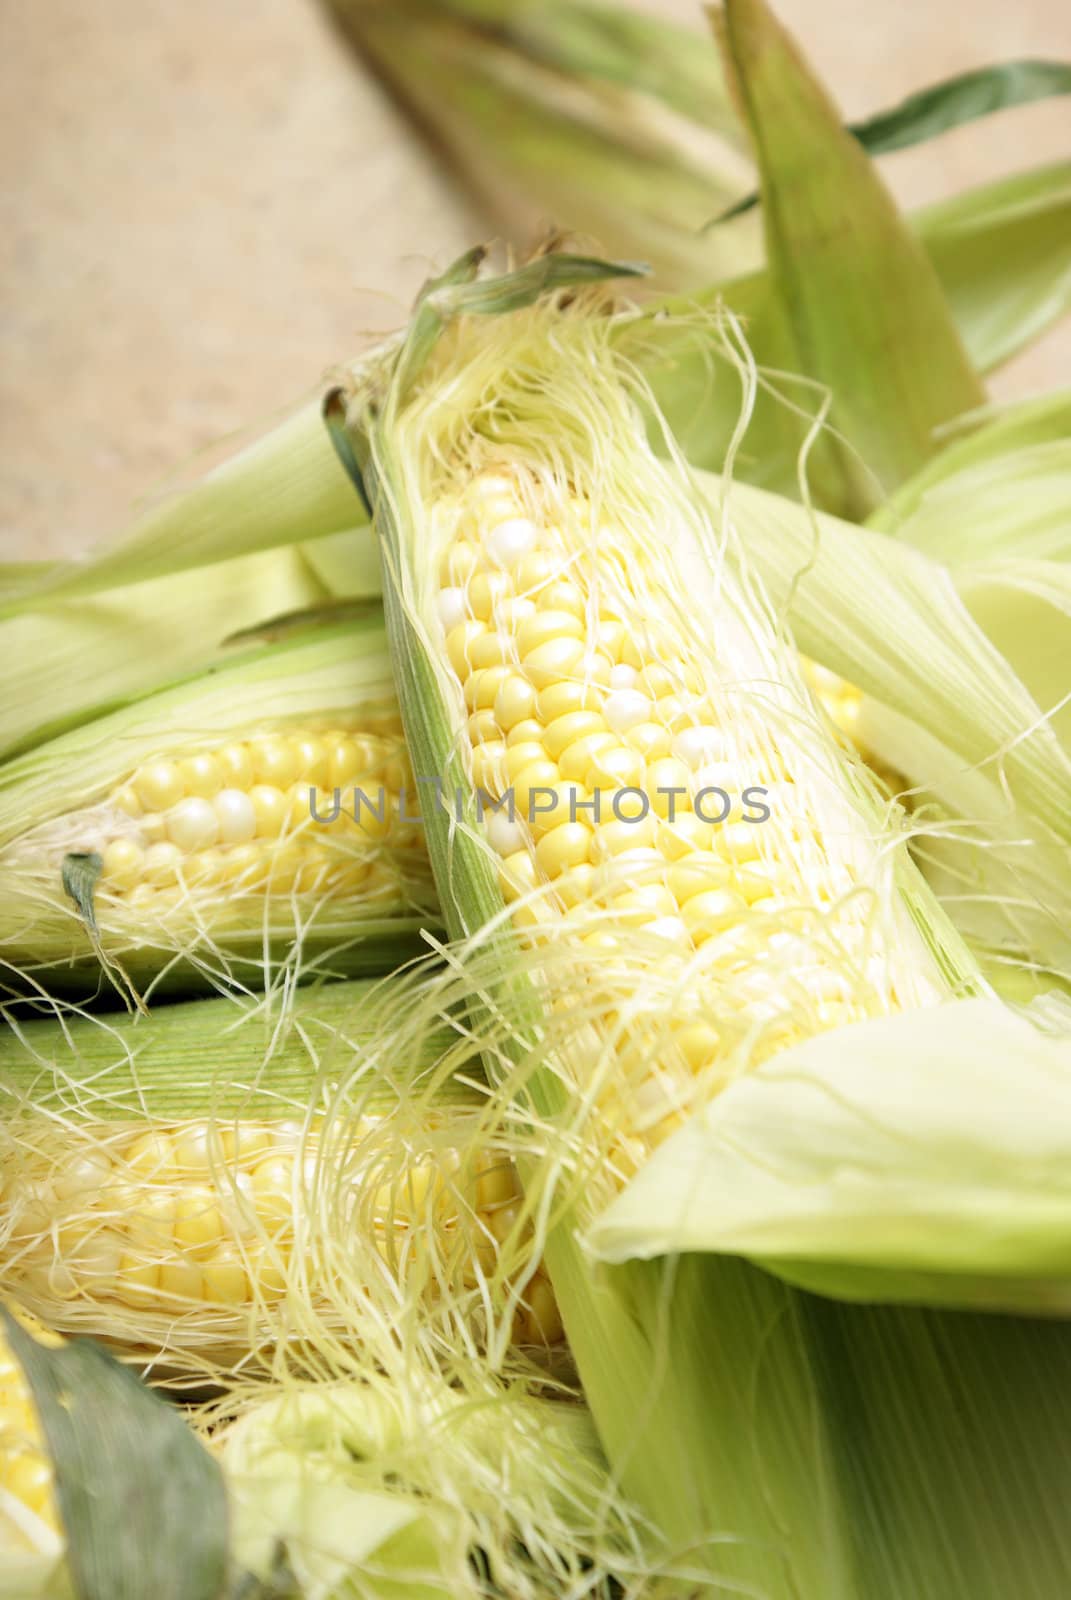 A macro of a few cobs of corn.